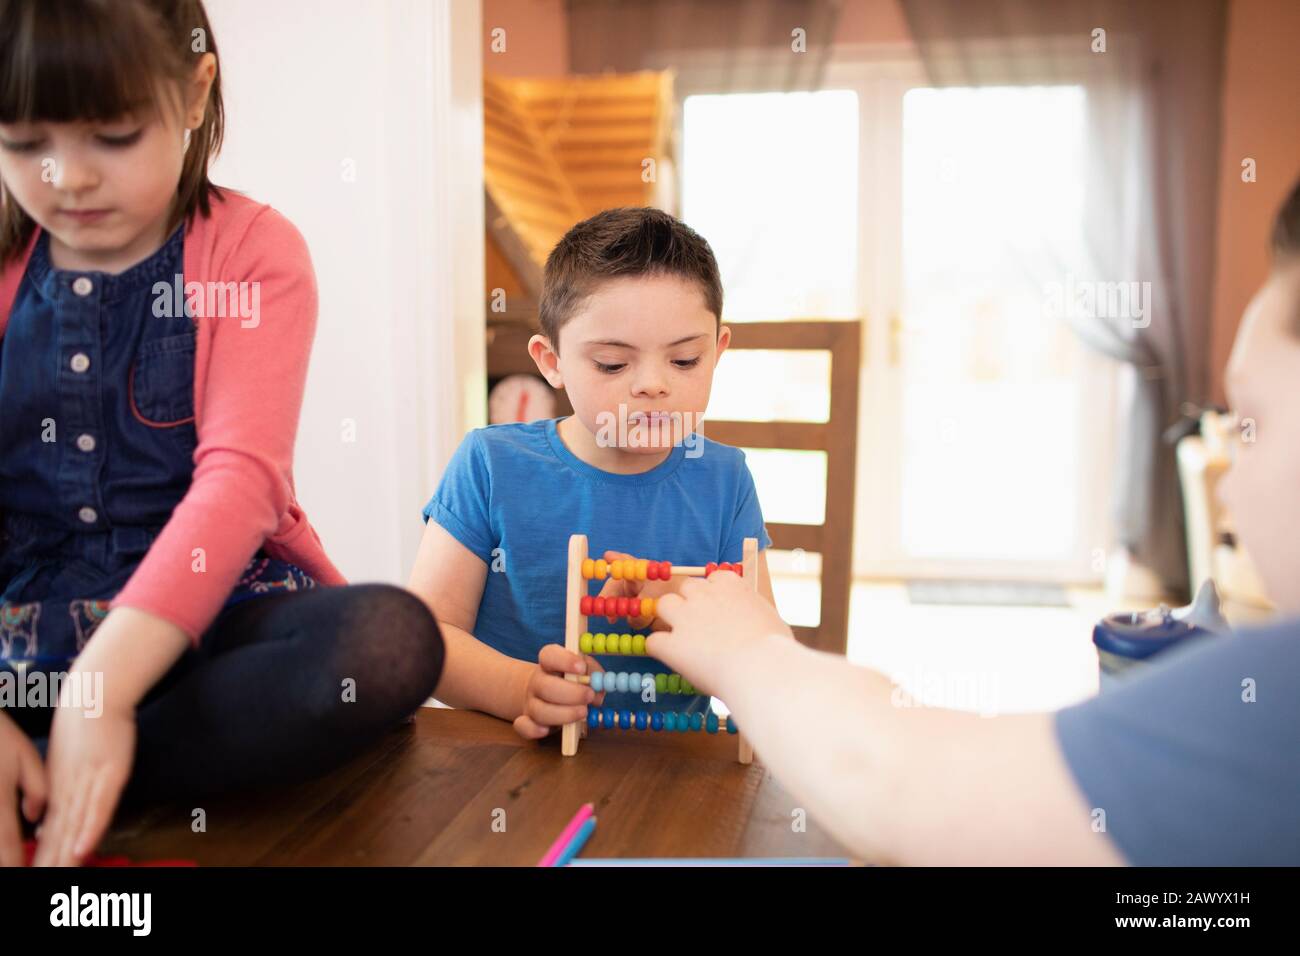 Junge mit Down-Syndrom und Geschwistern, die mit Spielzeug am Tisch spielen Stockfoto